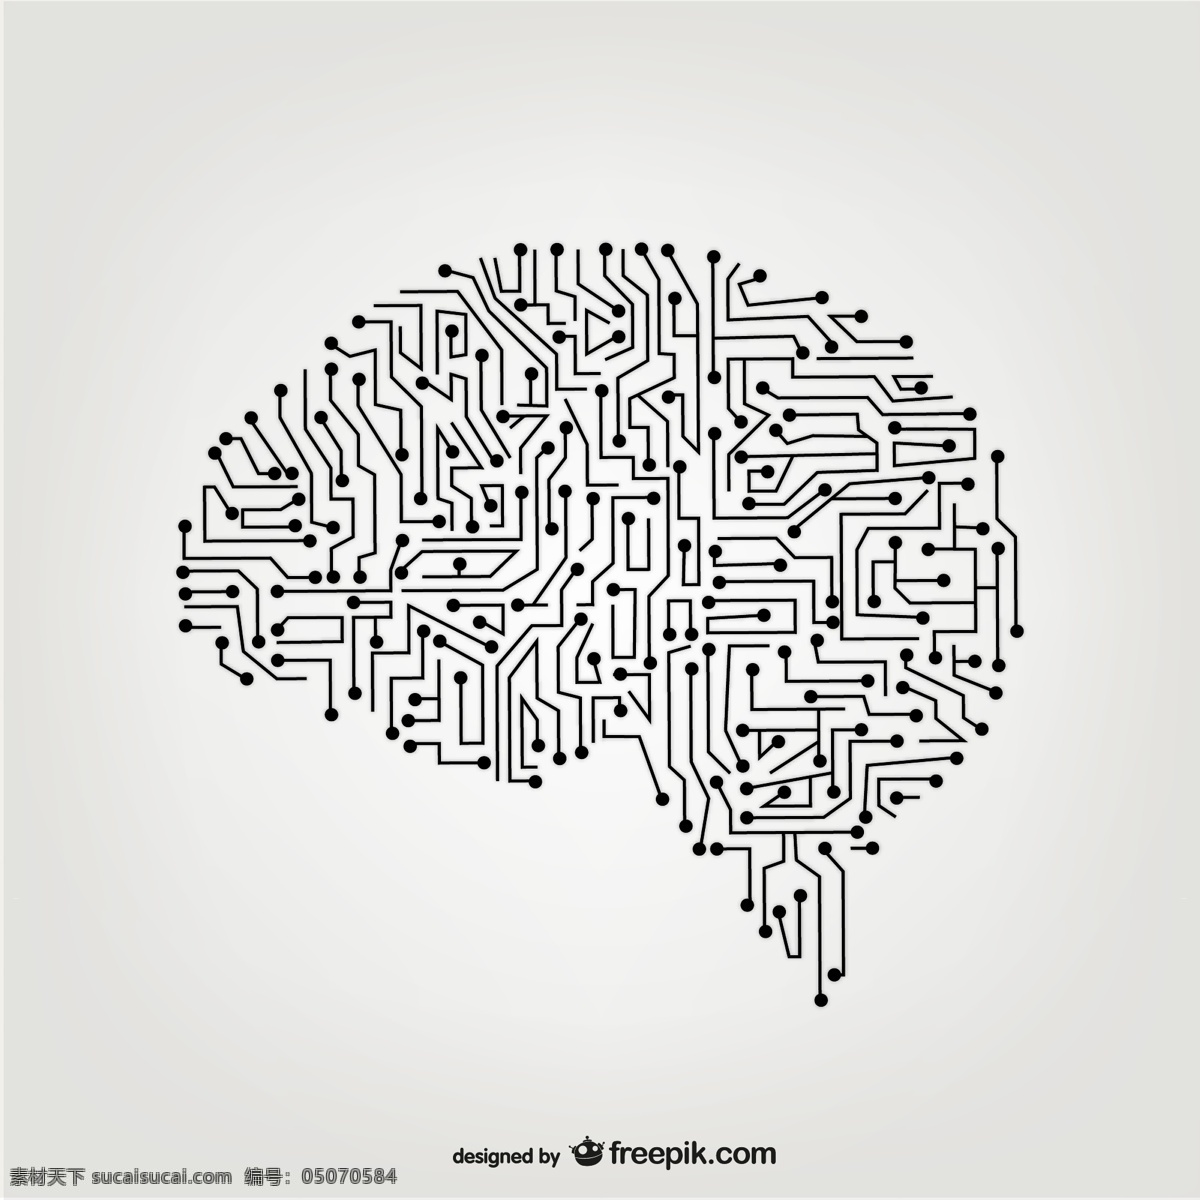 人造大脑载体 科技 创新 思考 外形 智力 大脑 矢量工